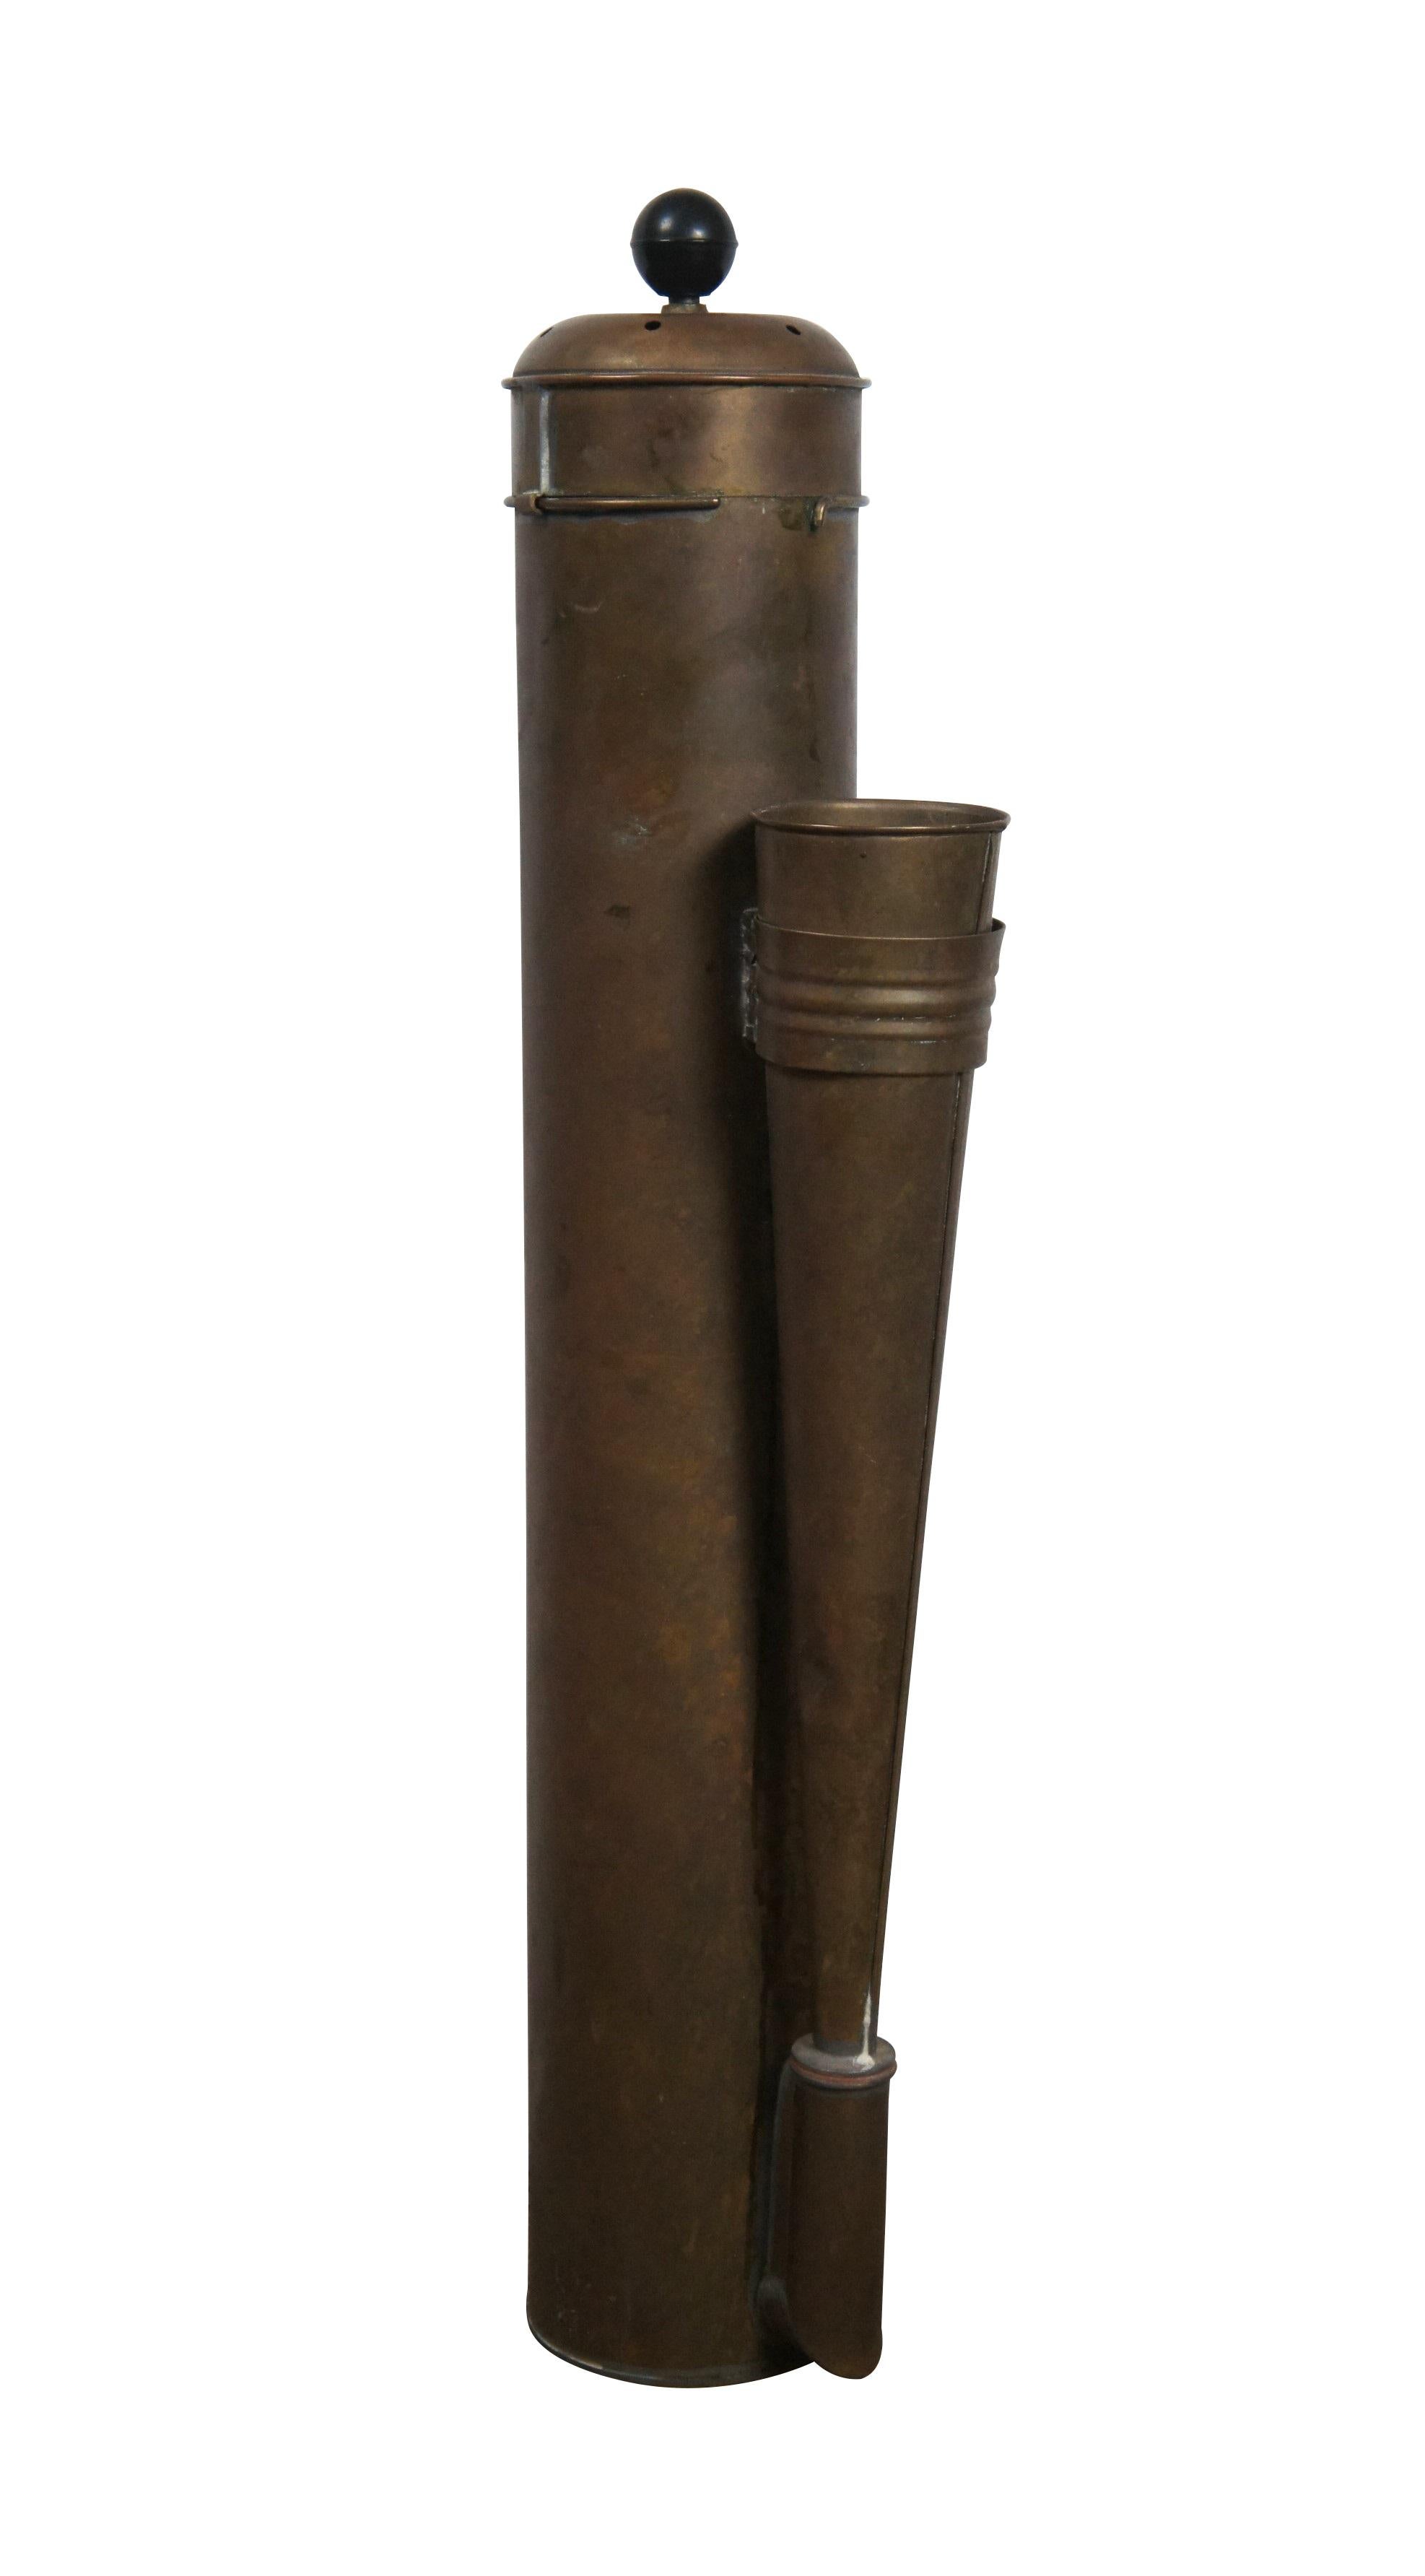 Messing-Nebelhorn mit Kolbenantrieb aus dem späten 19. bis frühen 20. Zylindrischer Korpus mit einseitig angebrachtem Horn, durchbrochenem Deckel und rundem, schwarzem Endstück am Kolben. Ein Paar Halterungen auf der Rückseite zur Befestigung an Ort